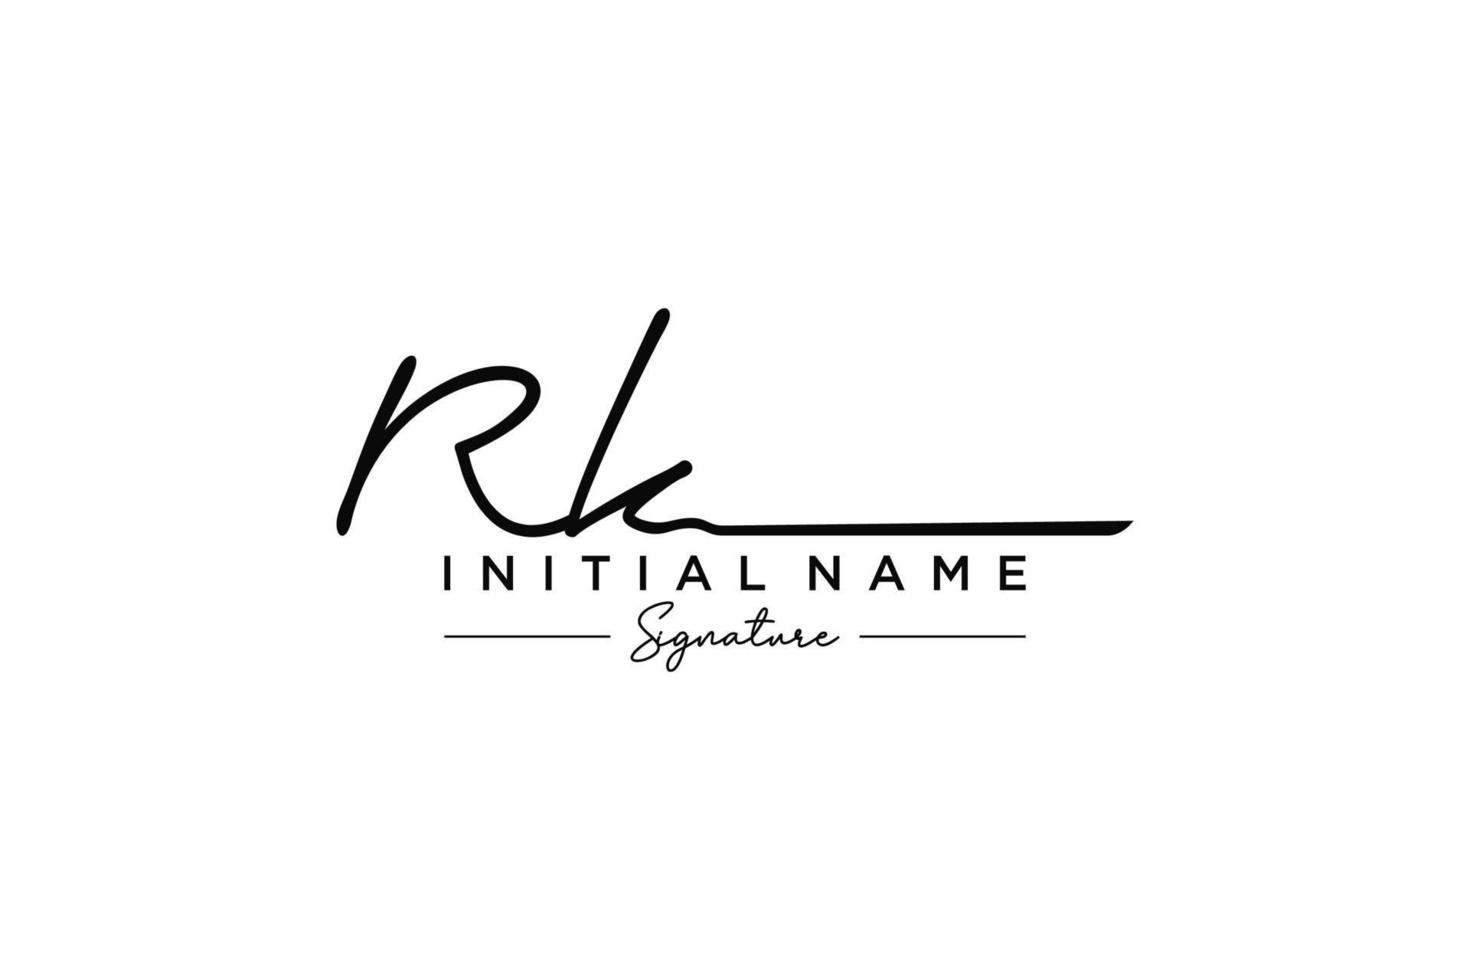 vetor inicial de modelo de logotipo de assinatura rk. ilustração vetorial de letras de caligrafia desenhada à mão.